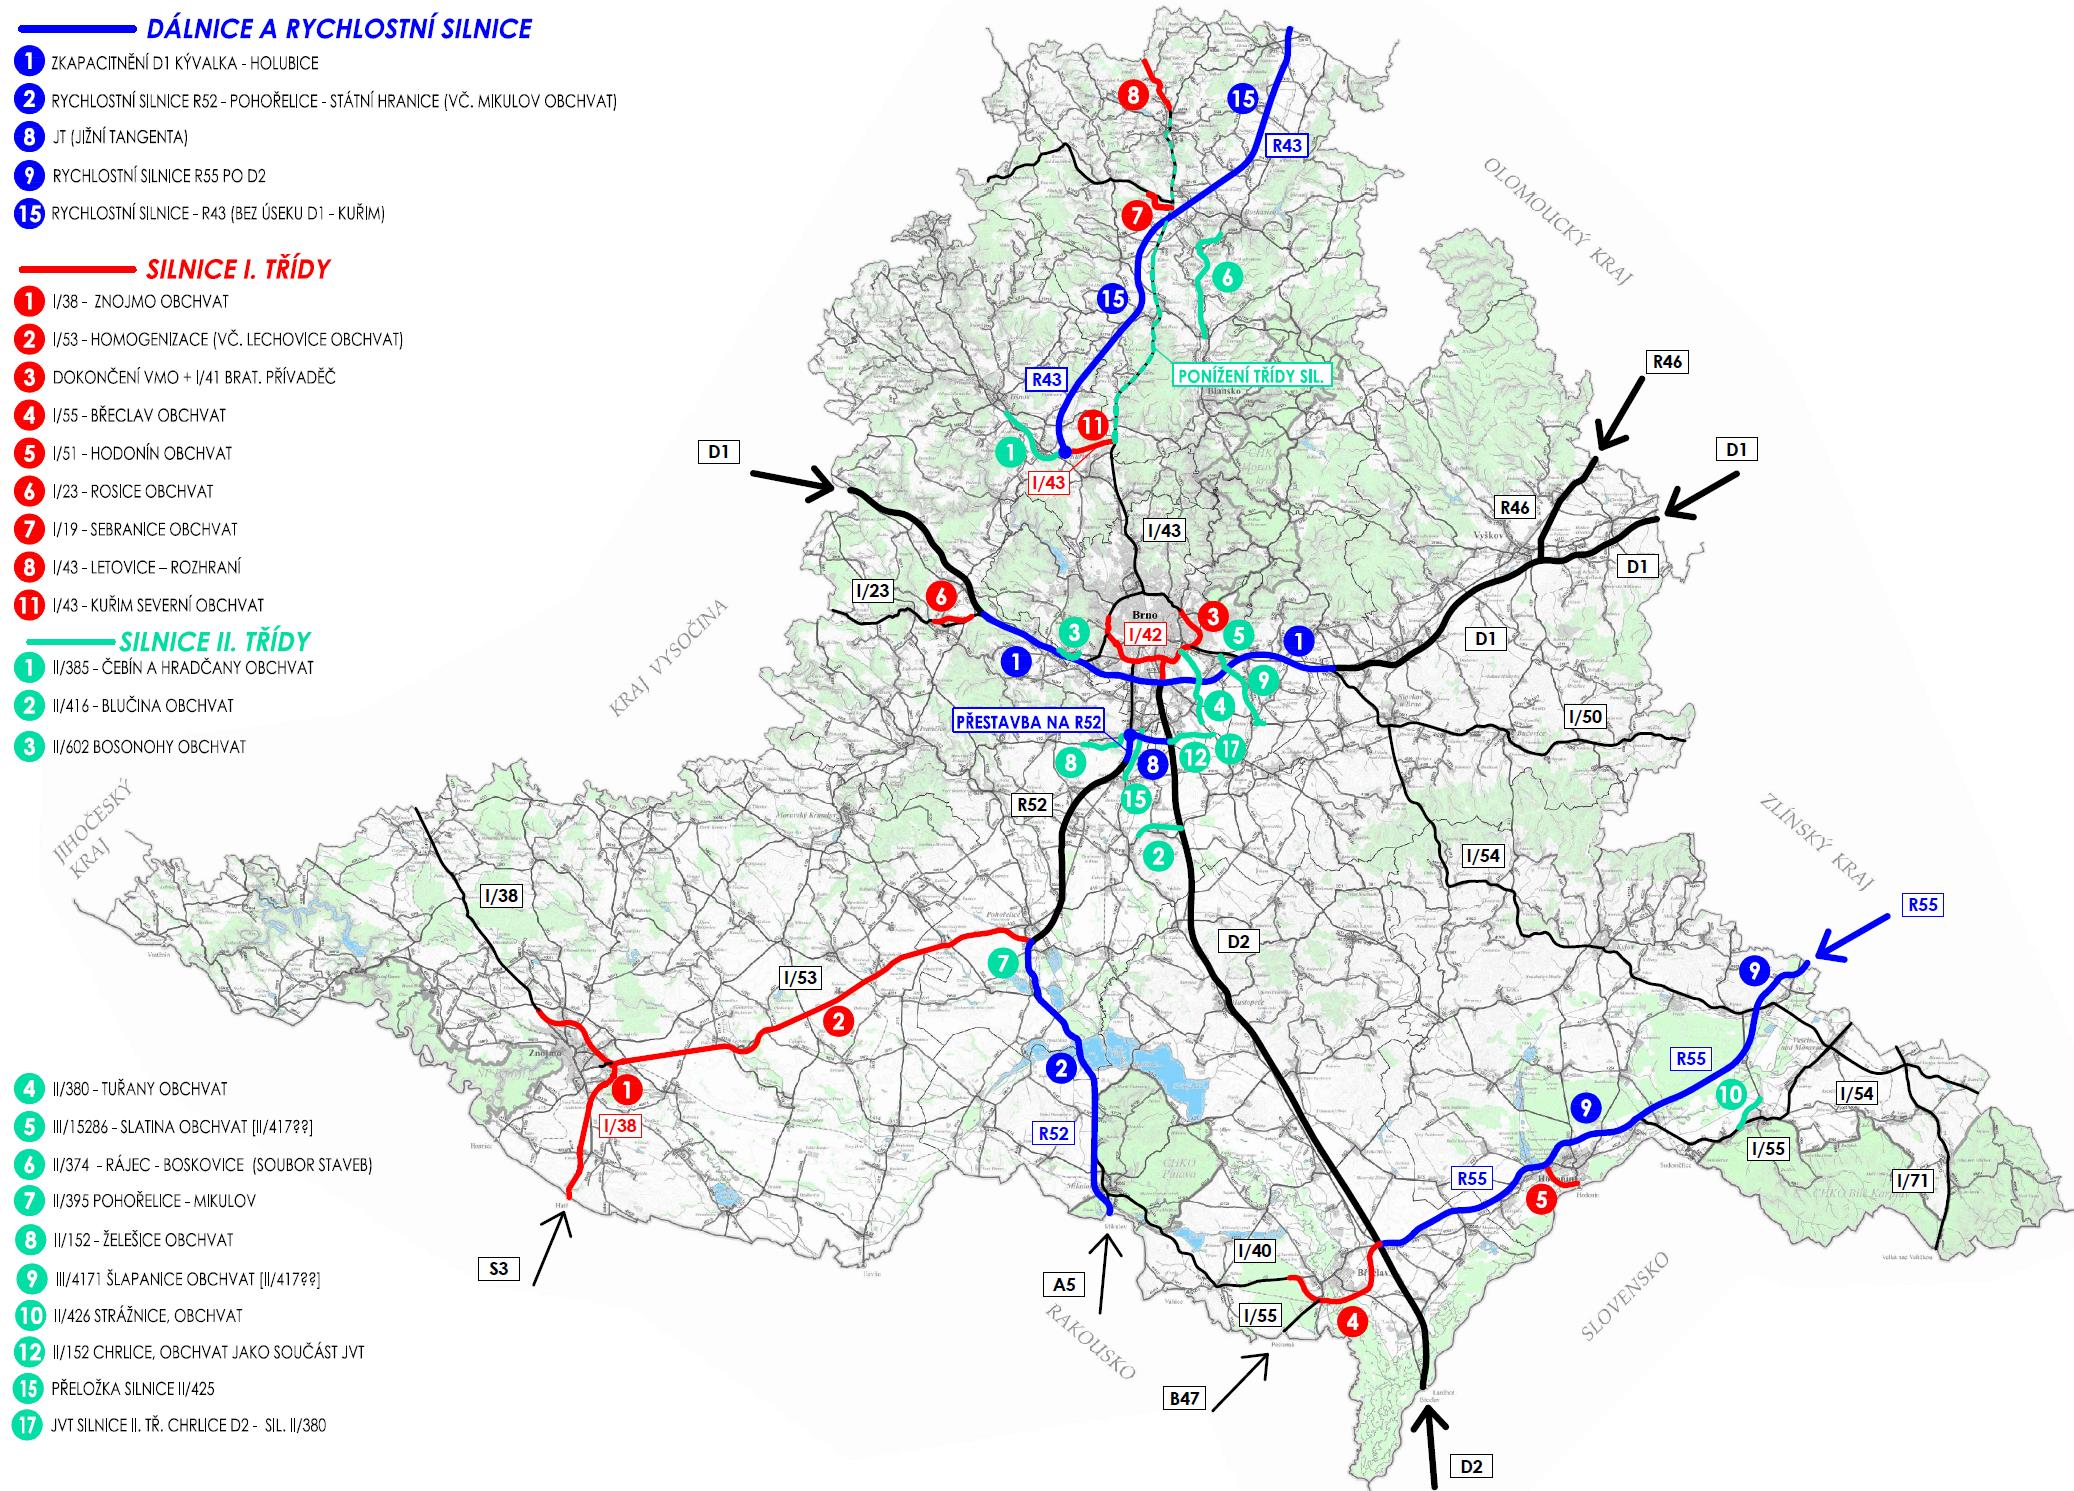 4.7 PODVARIANTA C2 Návrh řešení Podvarianty C2 mění charakter dopravy především v západní části brněnské aglomerace. Je vynechána jižní část R43 mezi dálnicí D1 a Kuřimí (sil. II/385) a dále JZT.